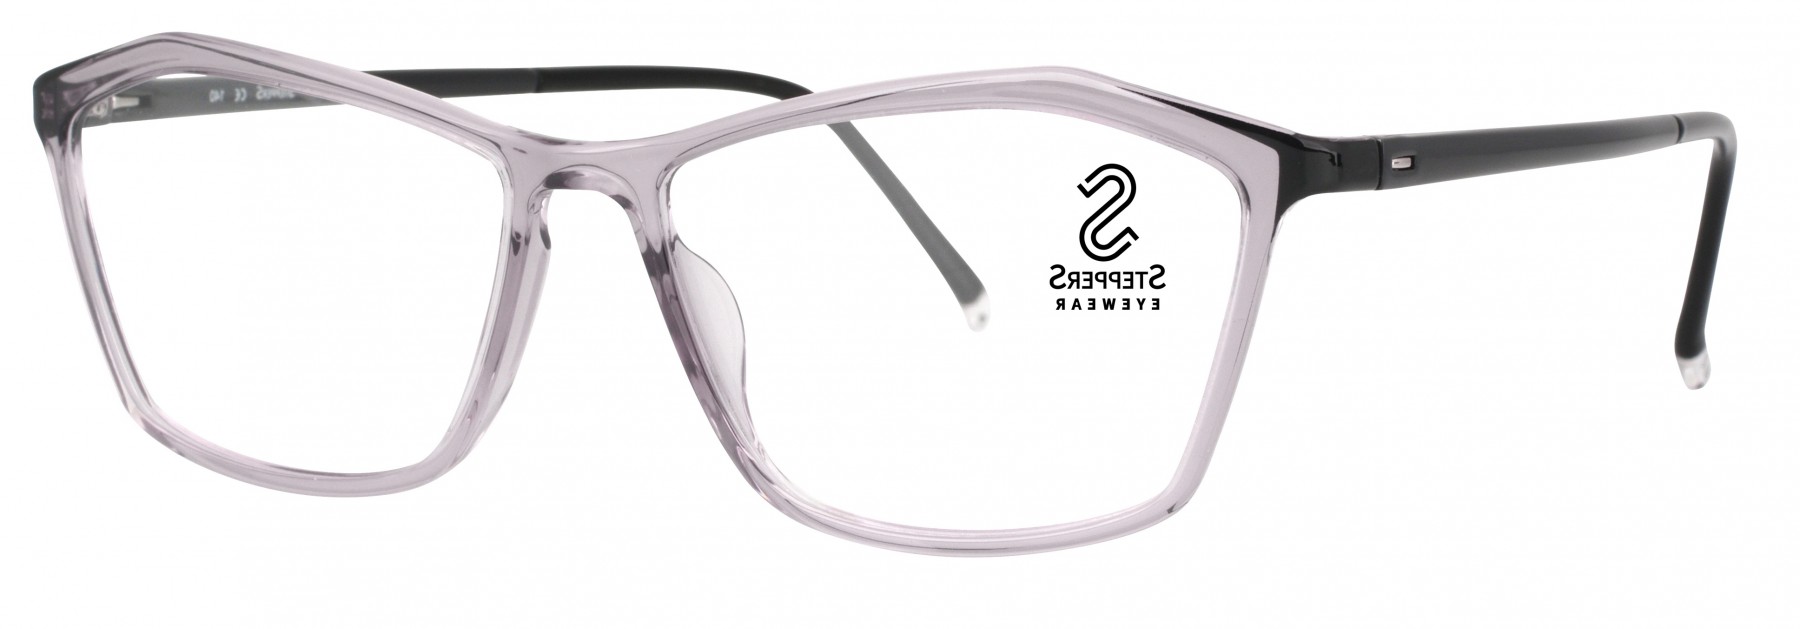 Stepper 30050 F890 - Oculos de Grau